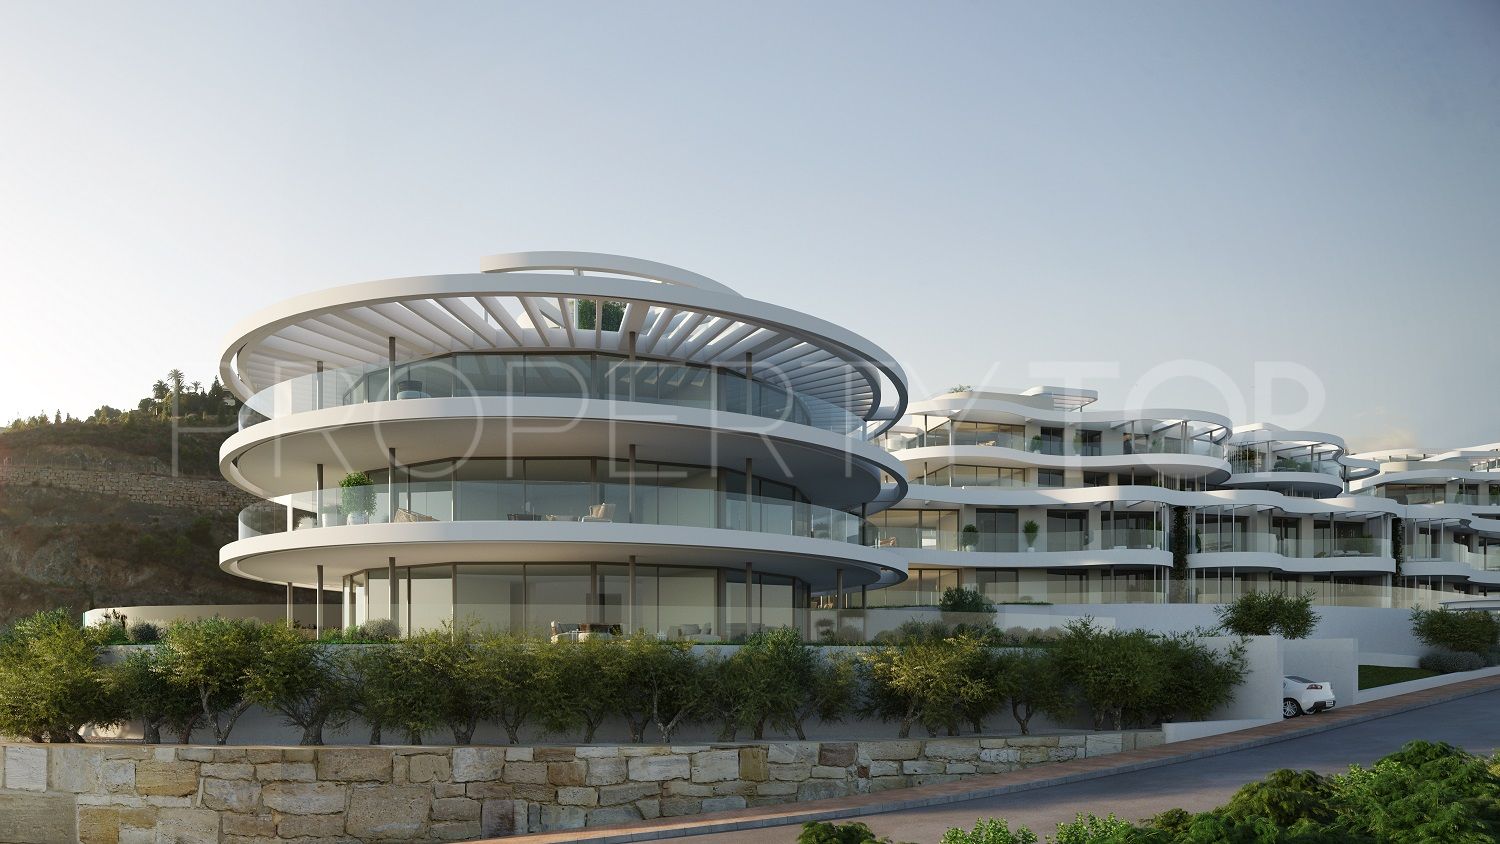 The View Marbella, apartamento planta baja con 3 dormitorios en venta